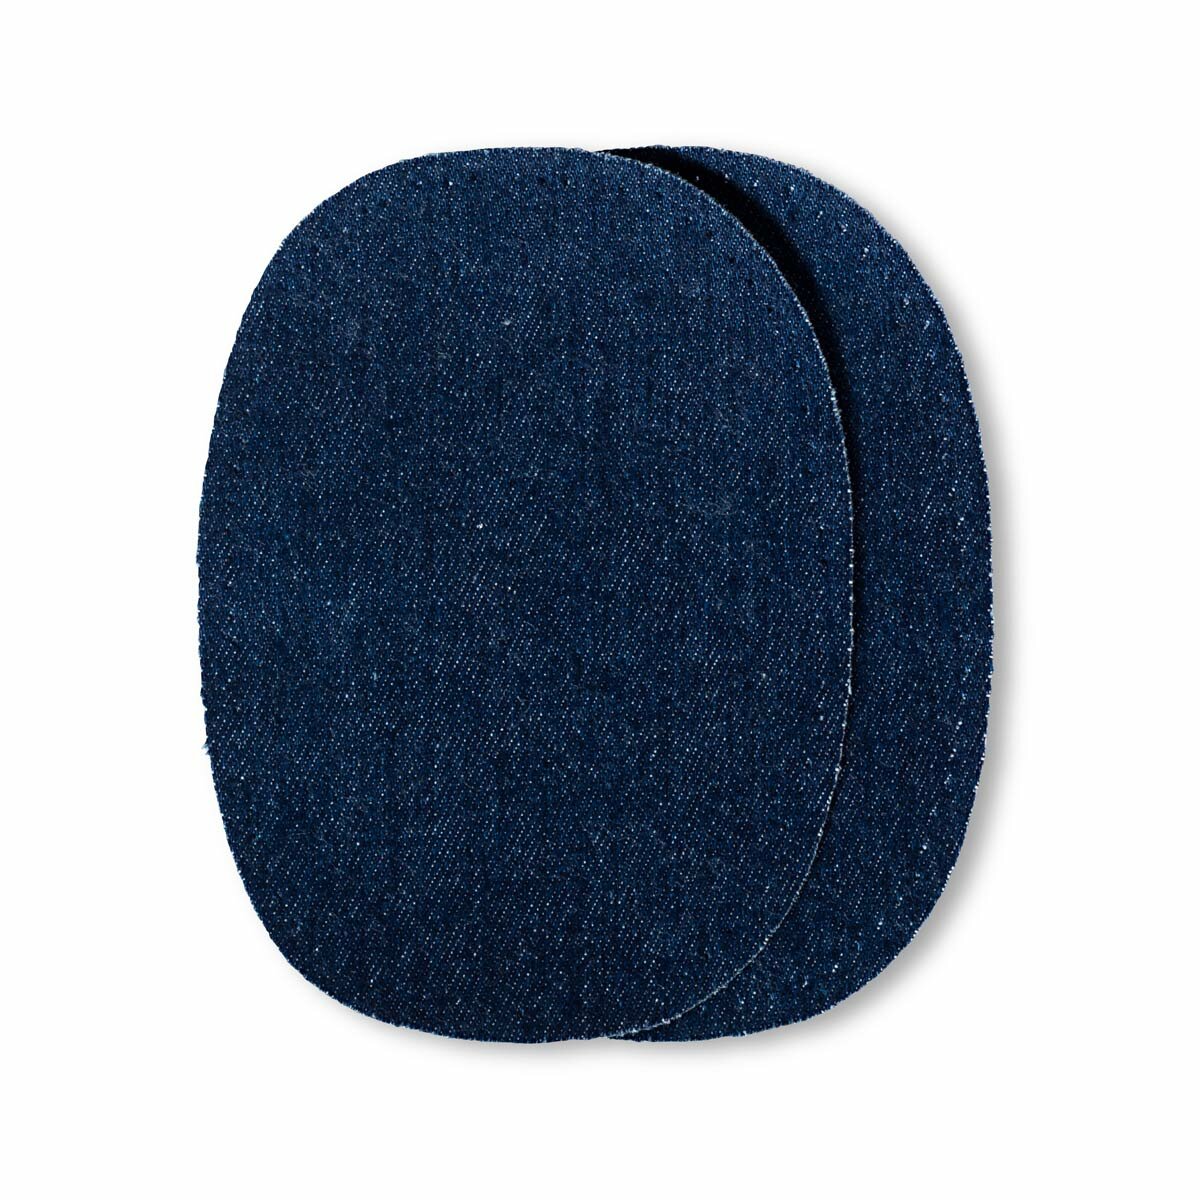 Заплатки термоклеевые джинсовые 10*14см, 2 шт, темно-синий Prym